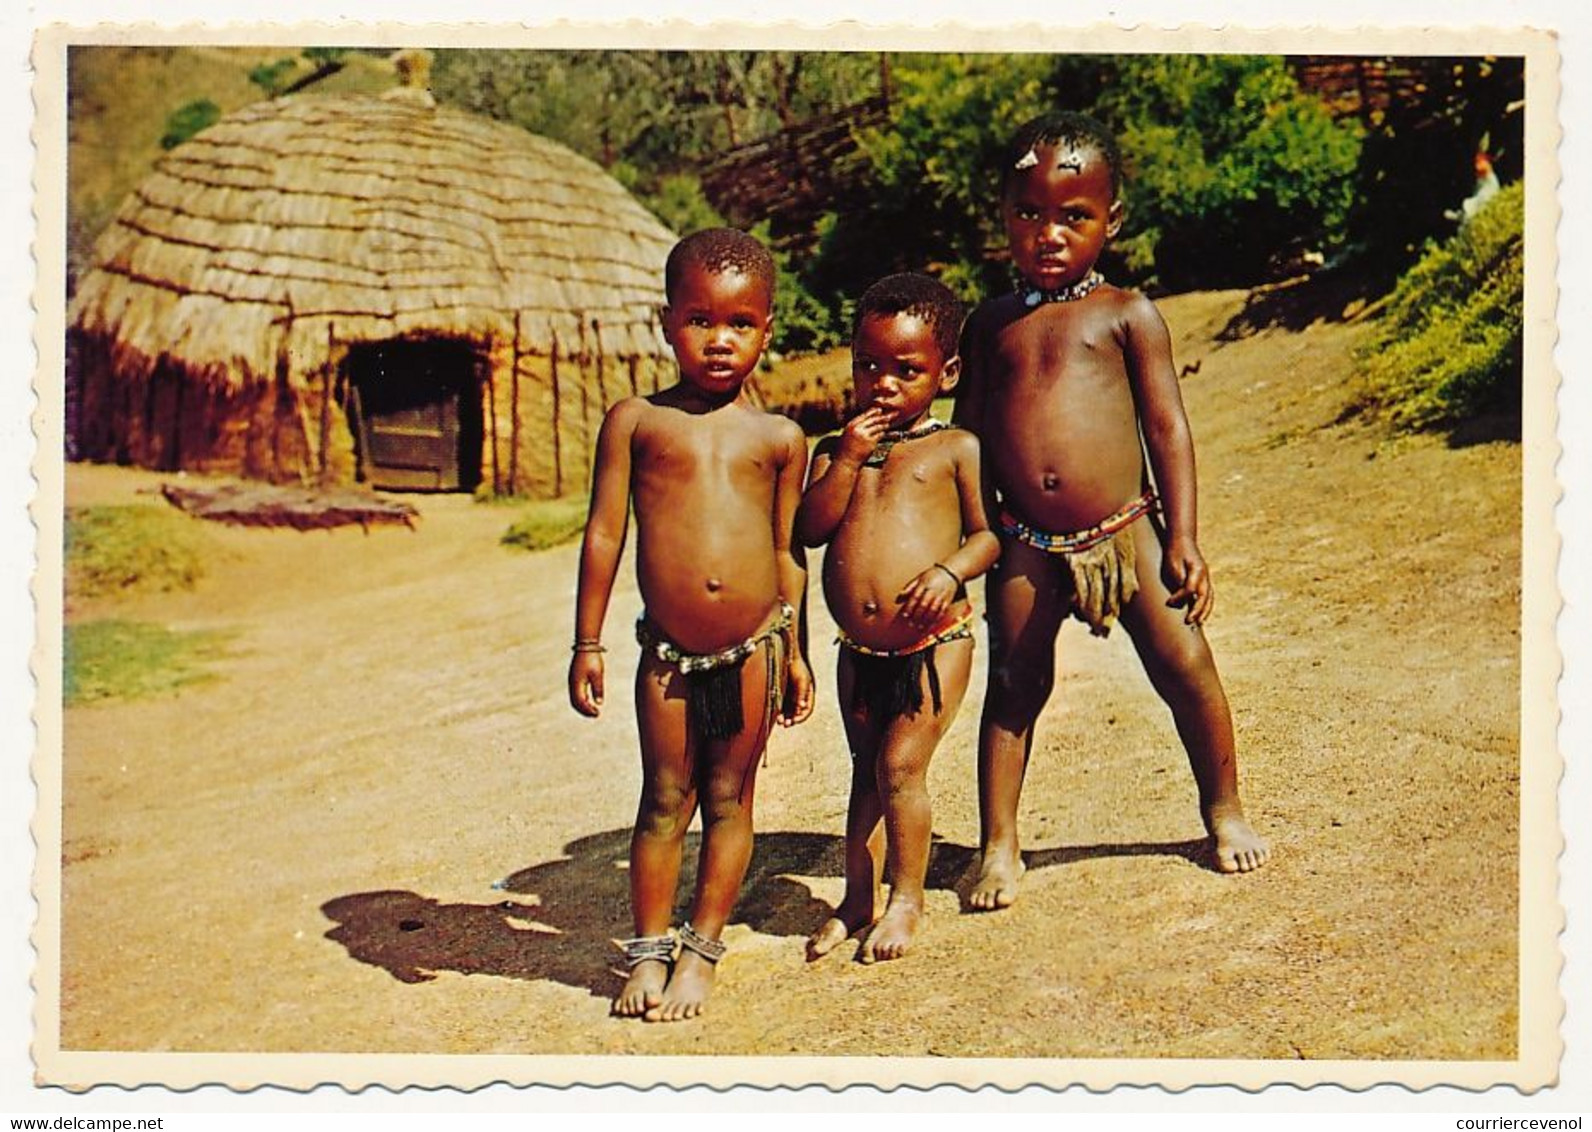 8 CPM - AFRIQUE DU SUD - Guerriers Zoulous, Jeunes filles, enfants, femmes zoulou